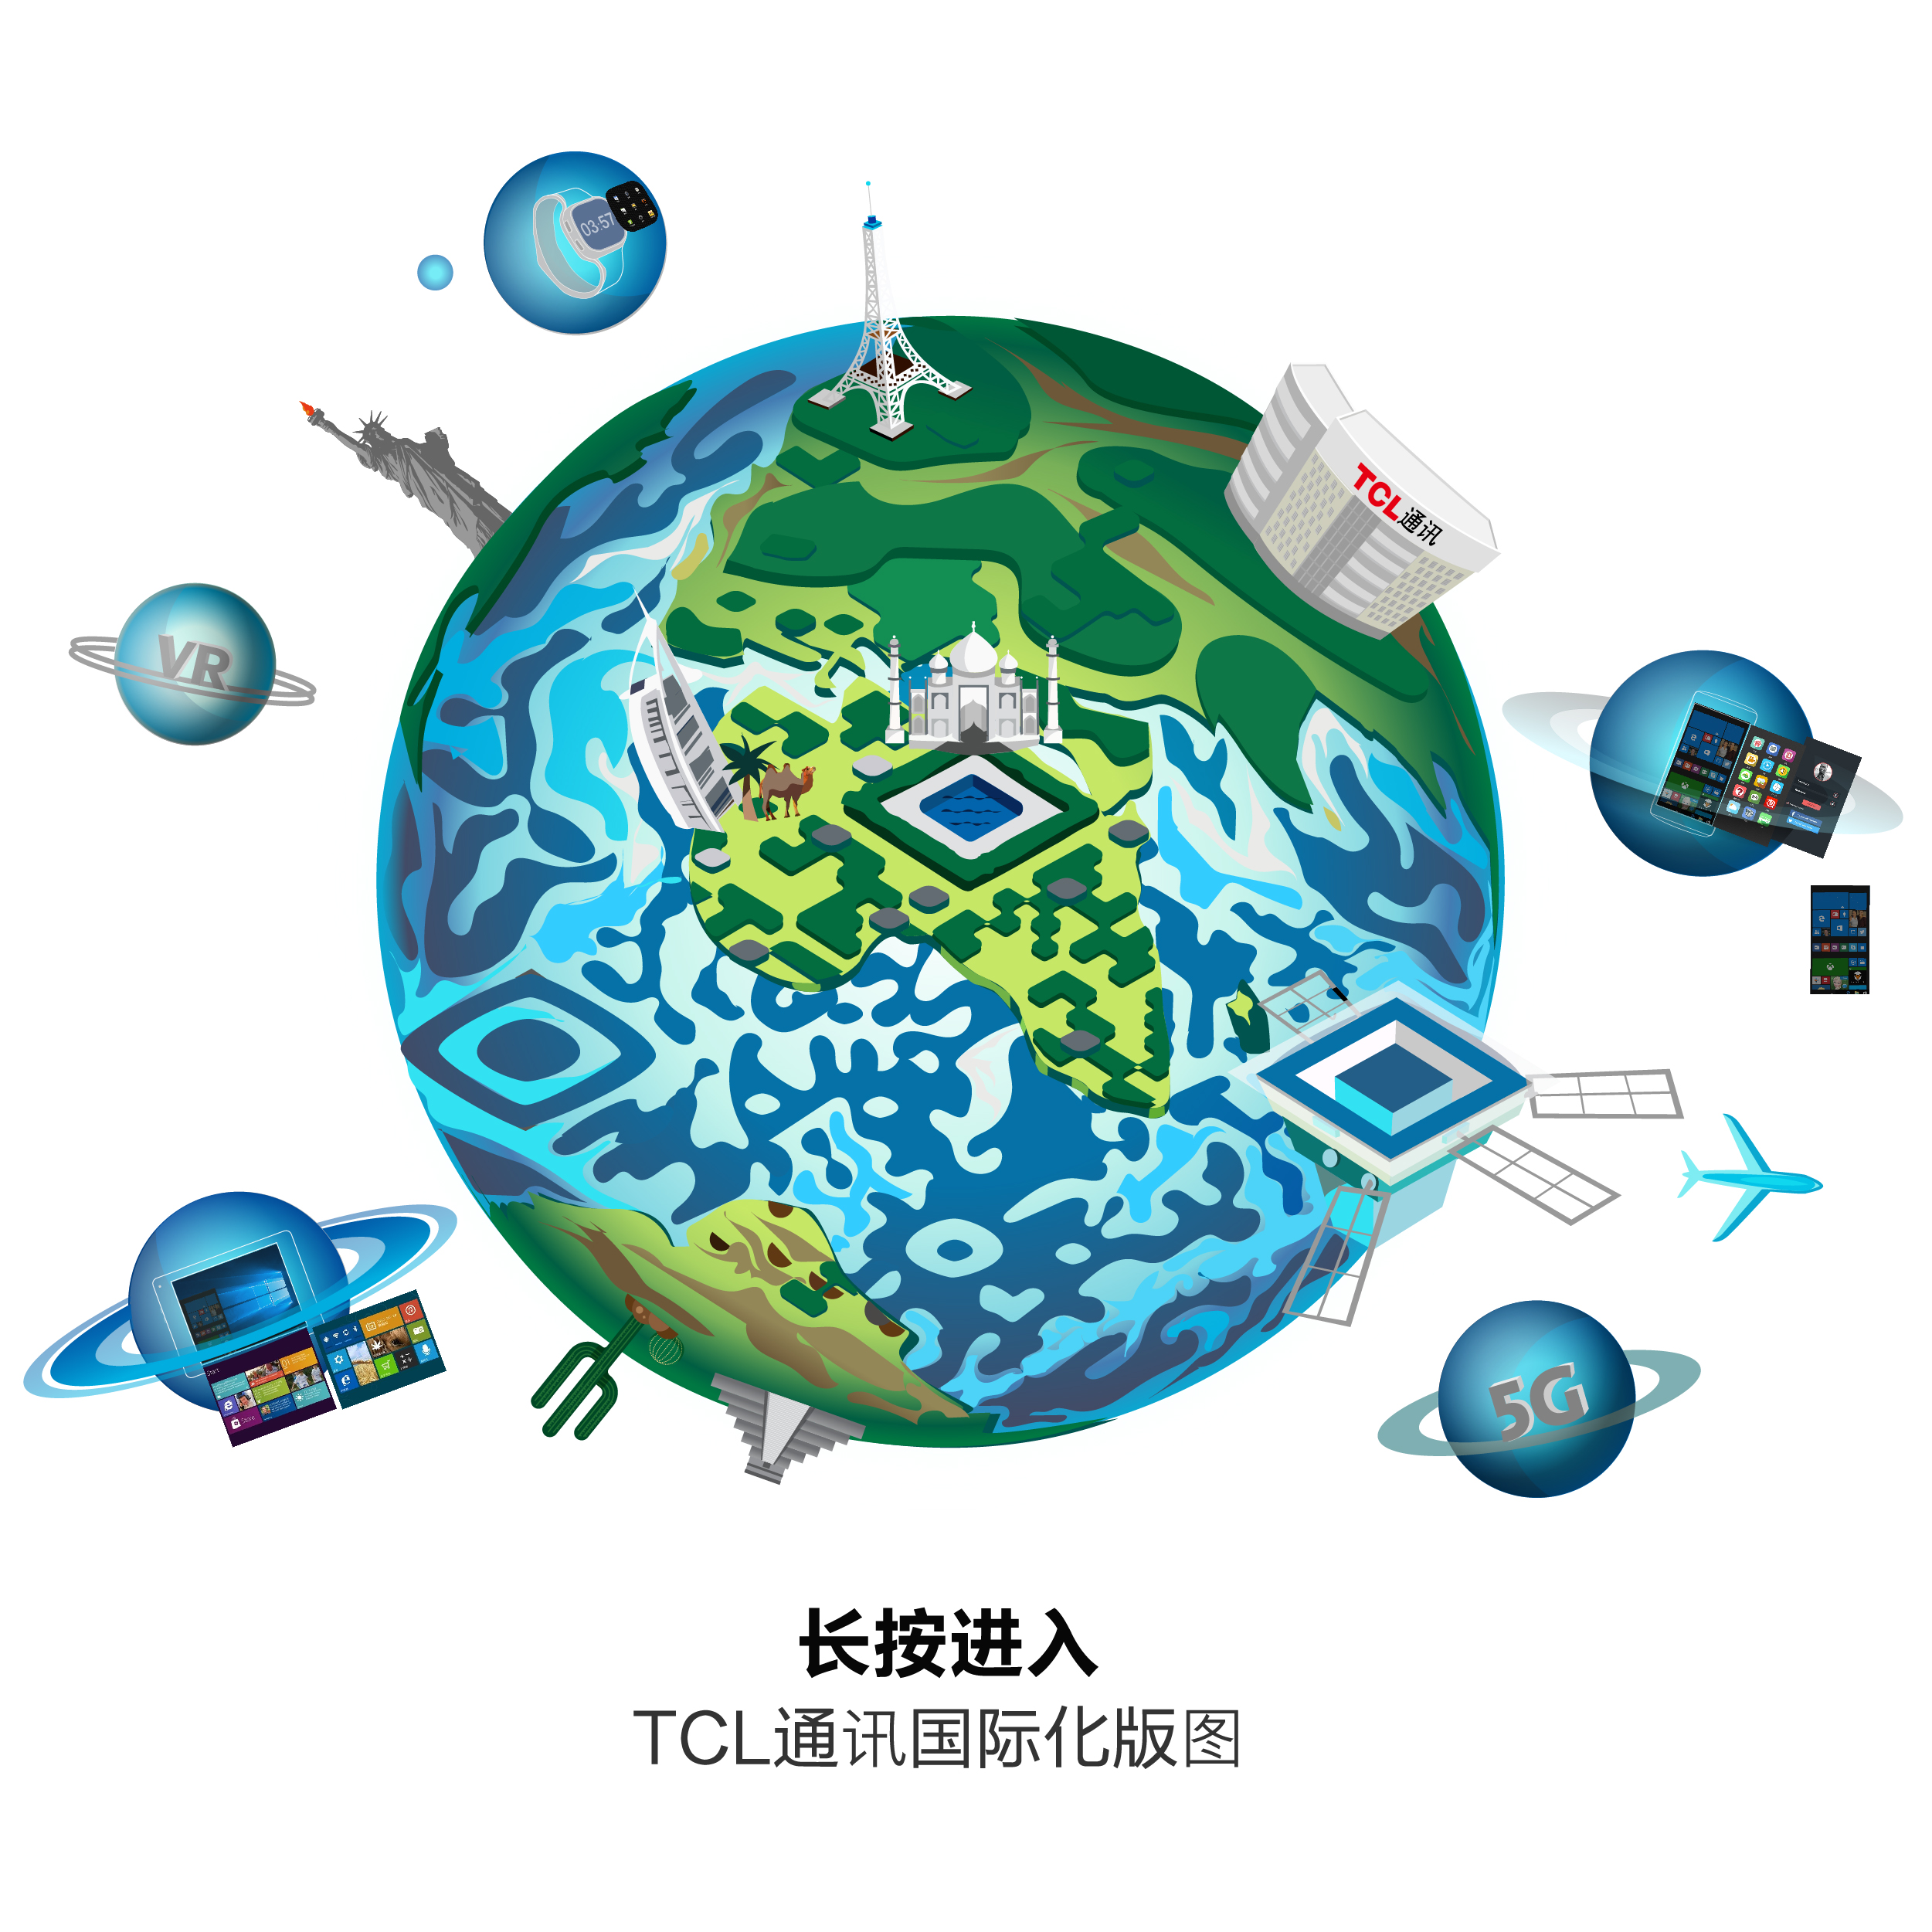 TCL通讯立体静态艺术二维码创意二维码-第九工场设计外包